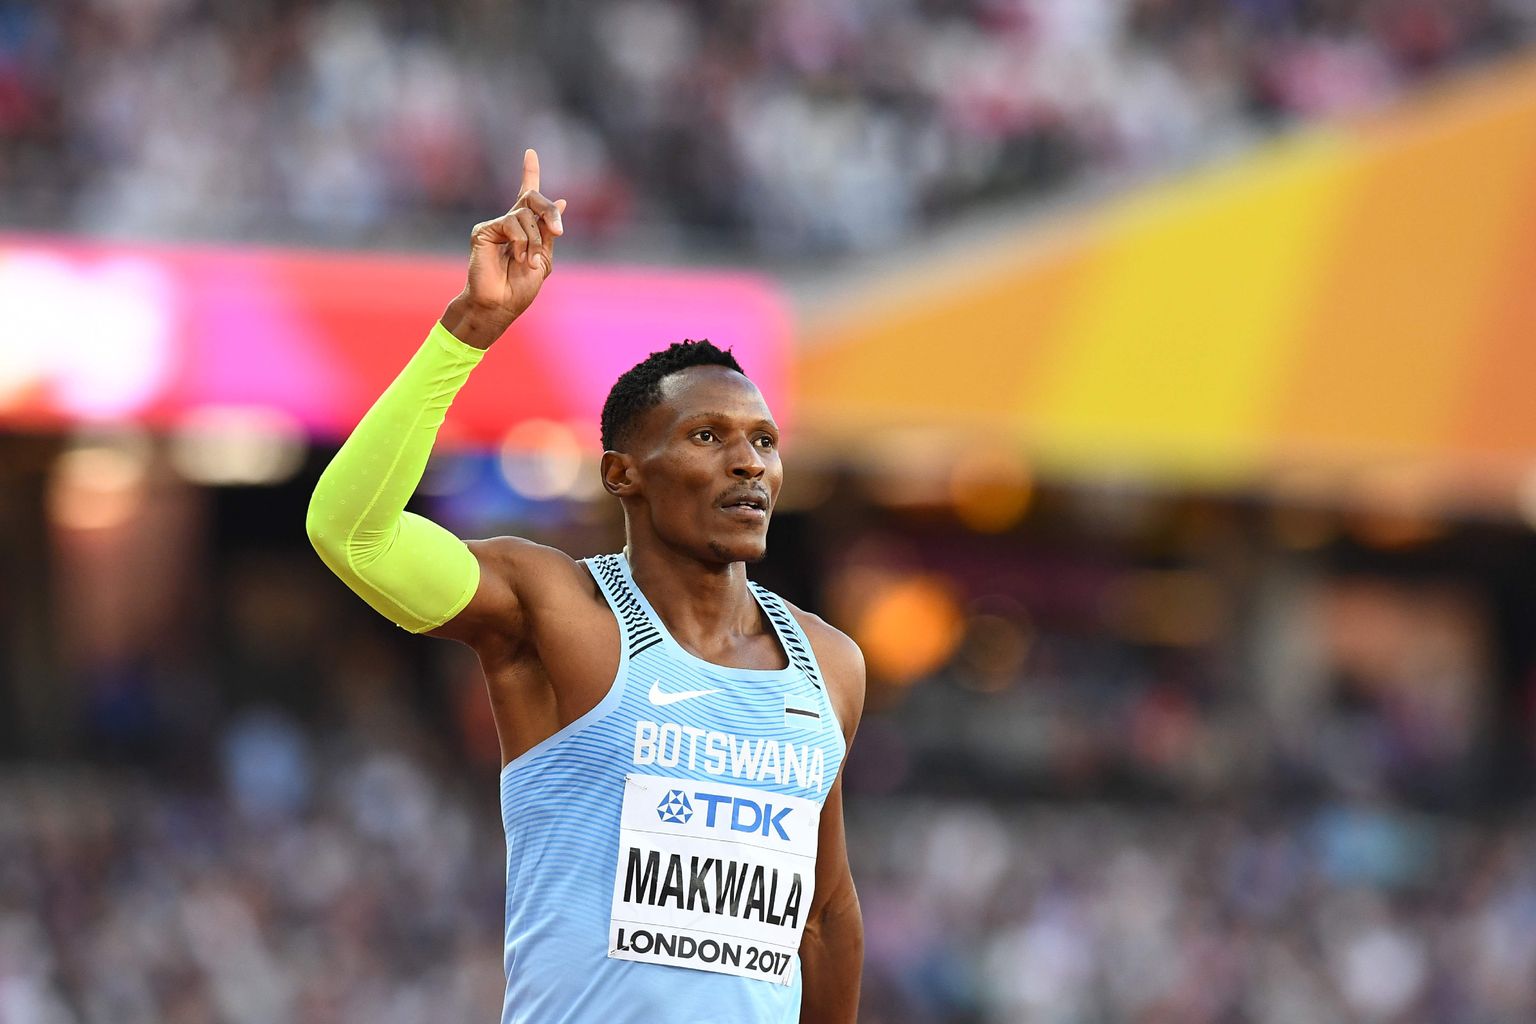 Pühapäeval osales Isaac Makwala 400 meetri jooksu poolfinaalis ja kõik oli hästi. Aga esmaspäeval pidi ta kõhuviiruse tõttu loobuma 200 meetri eeljooksust ja eile 400 meetri finaalist.